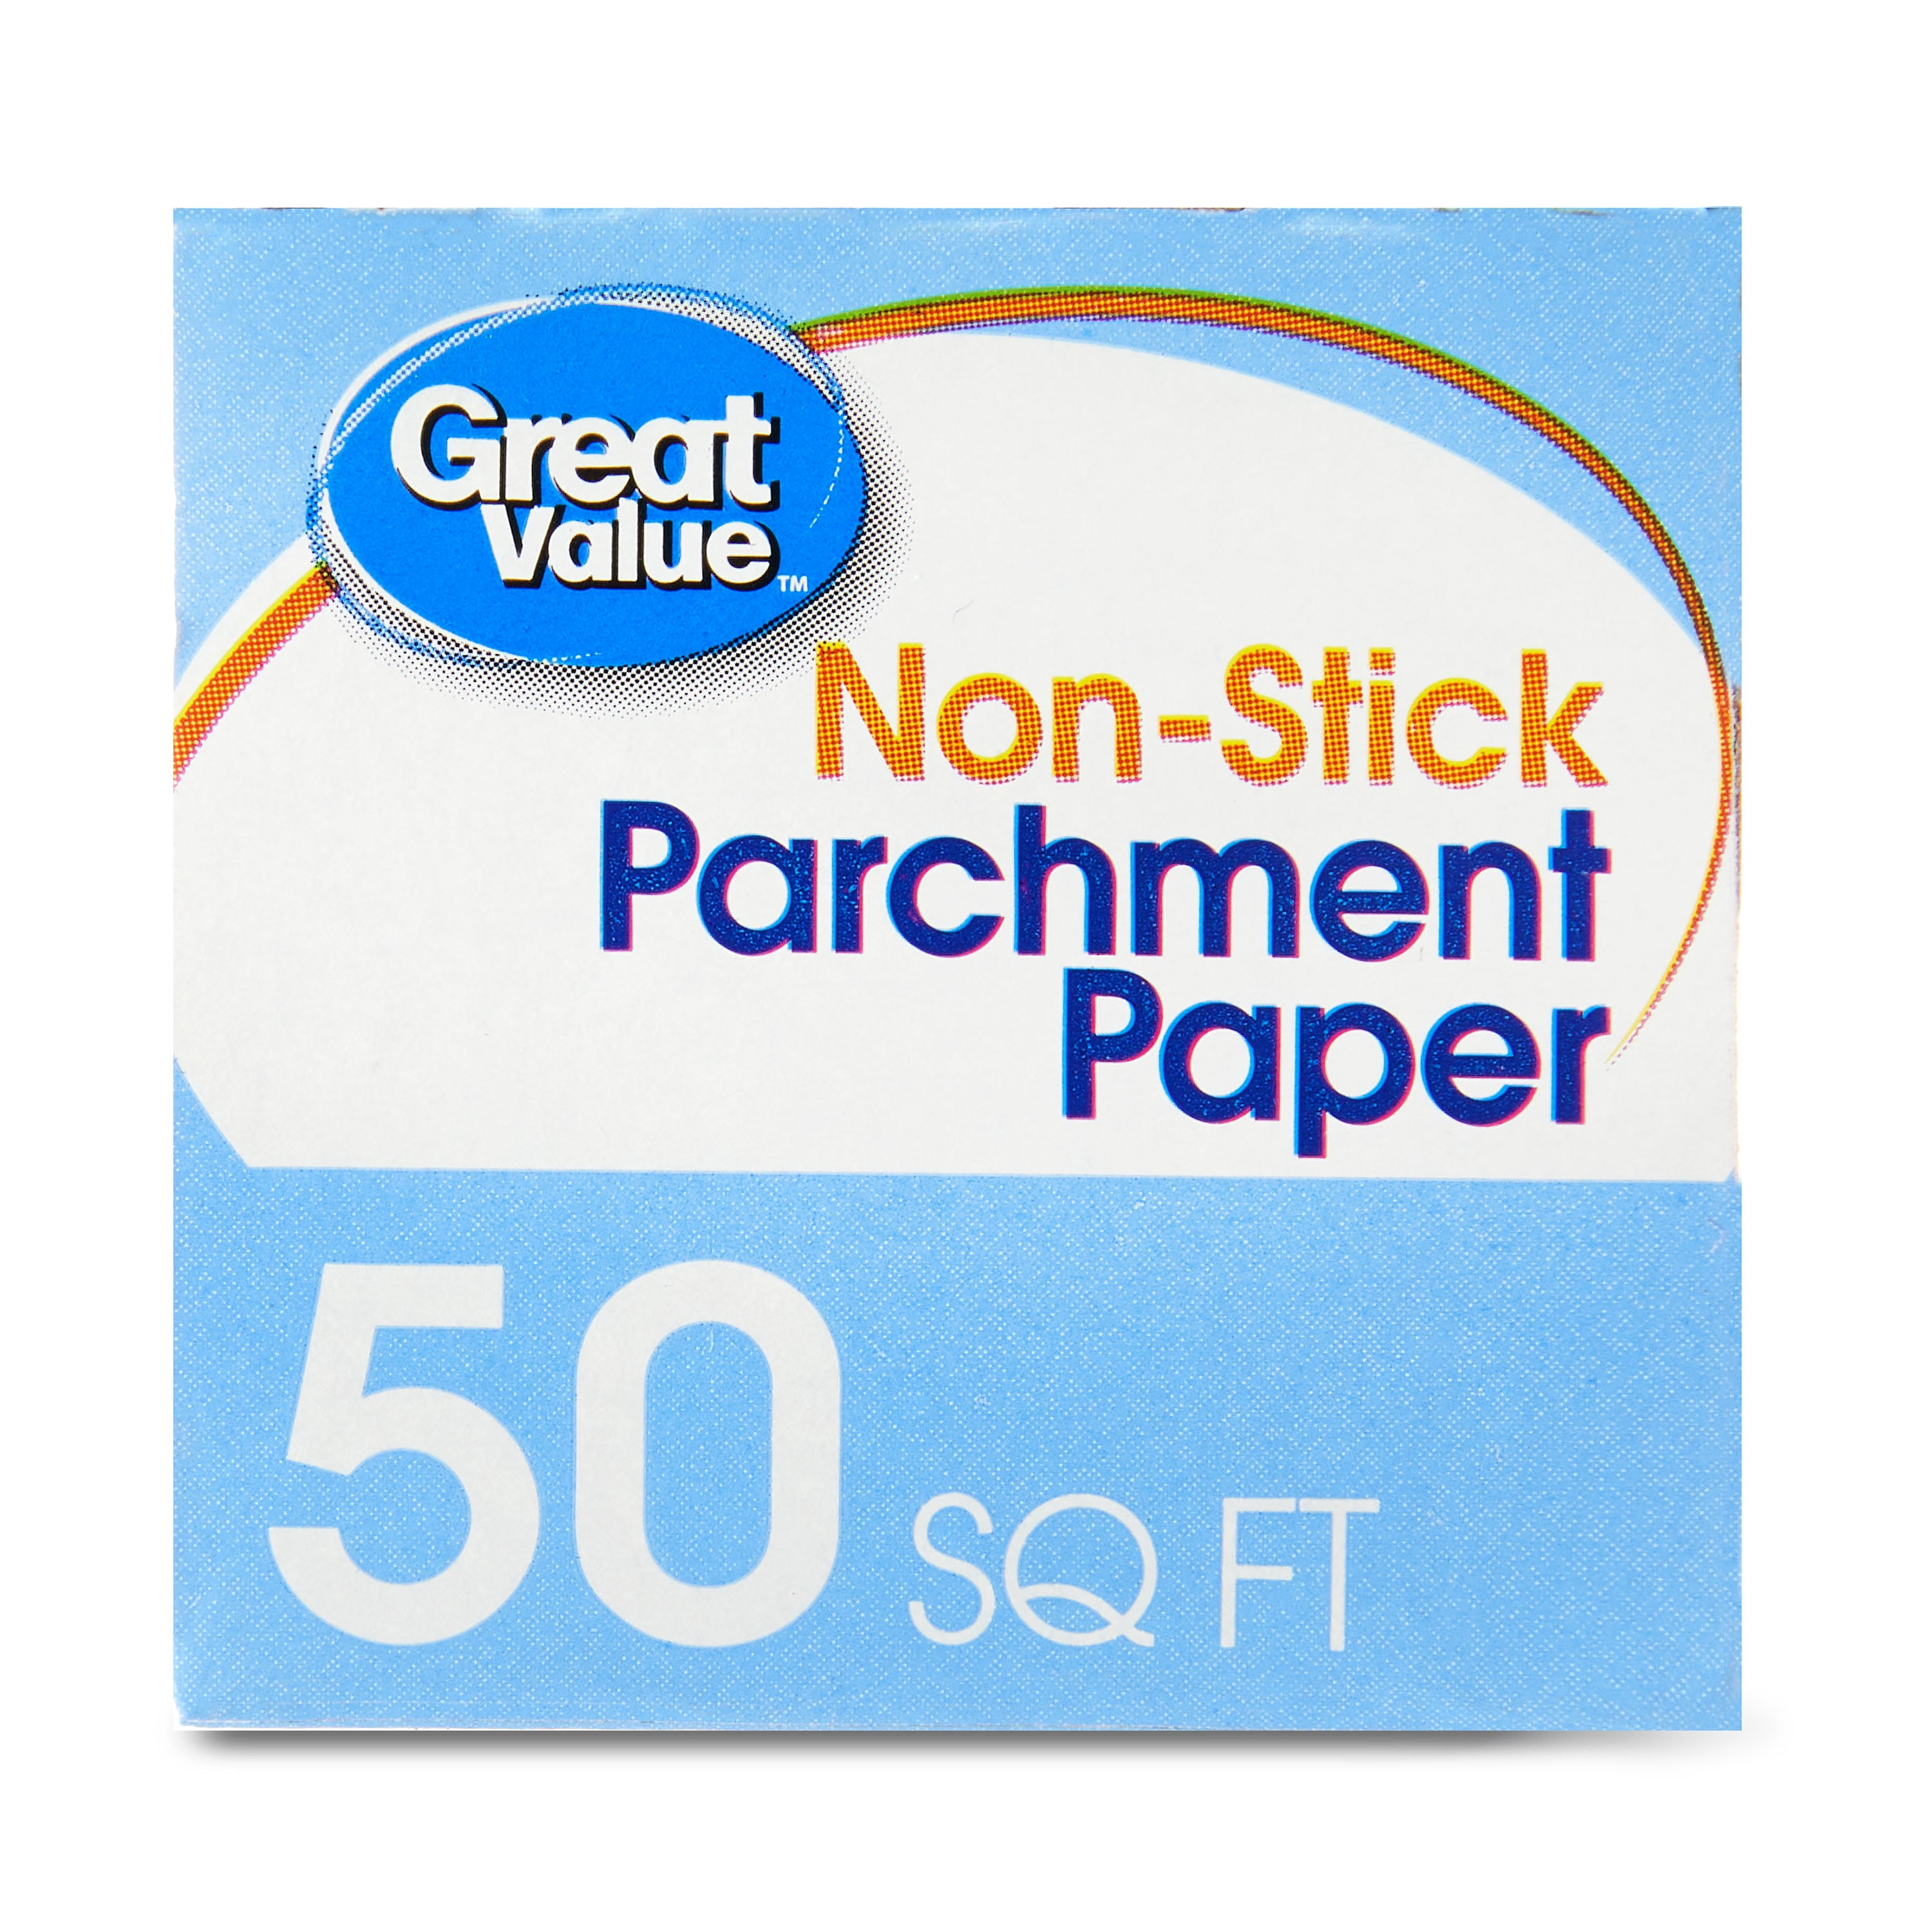 Signature Select Parchment Paper Sheets - 50 CT - Safeway